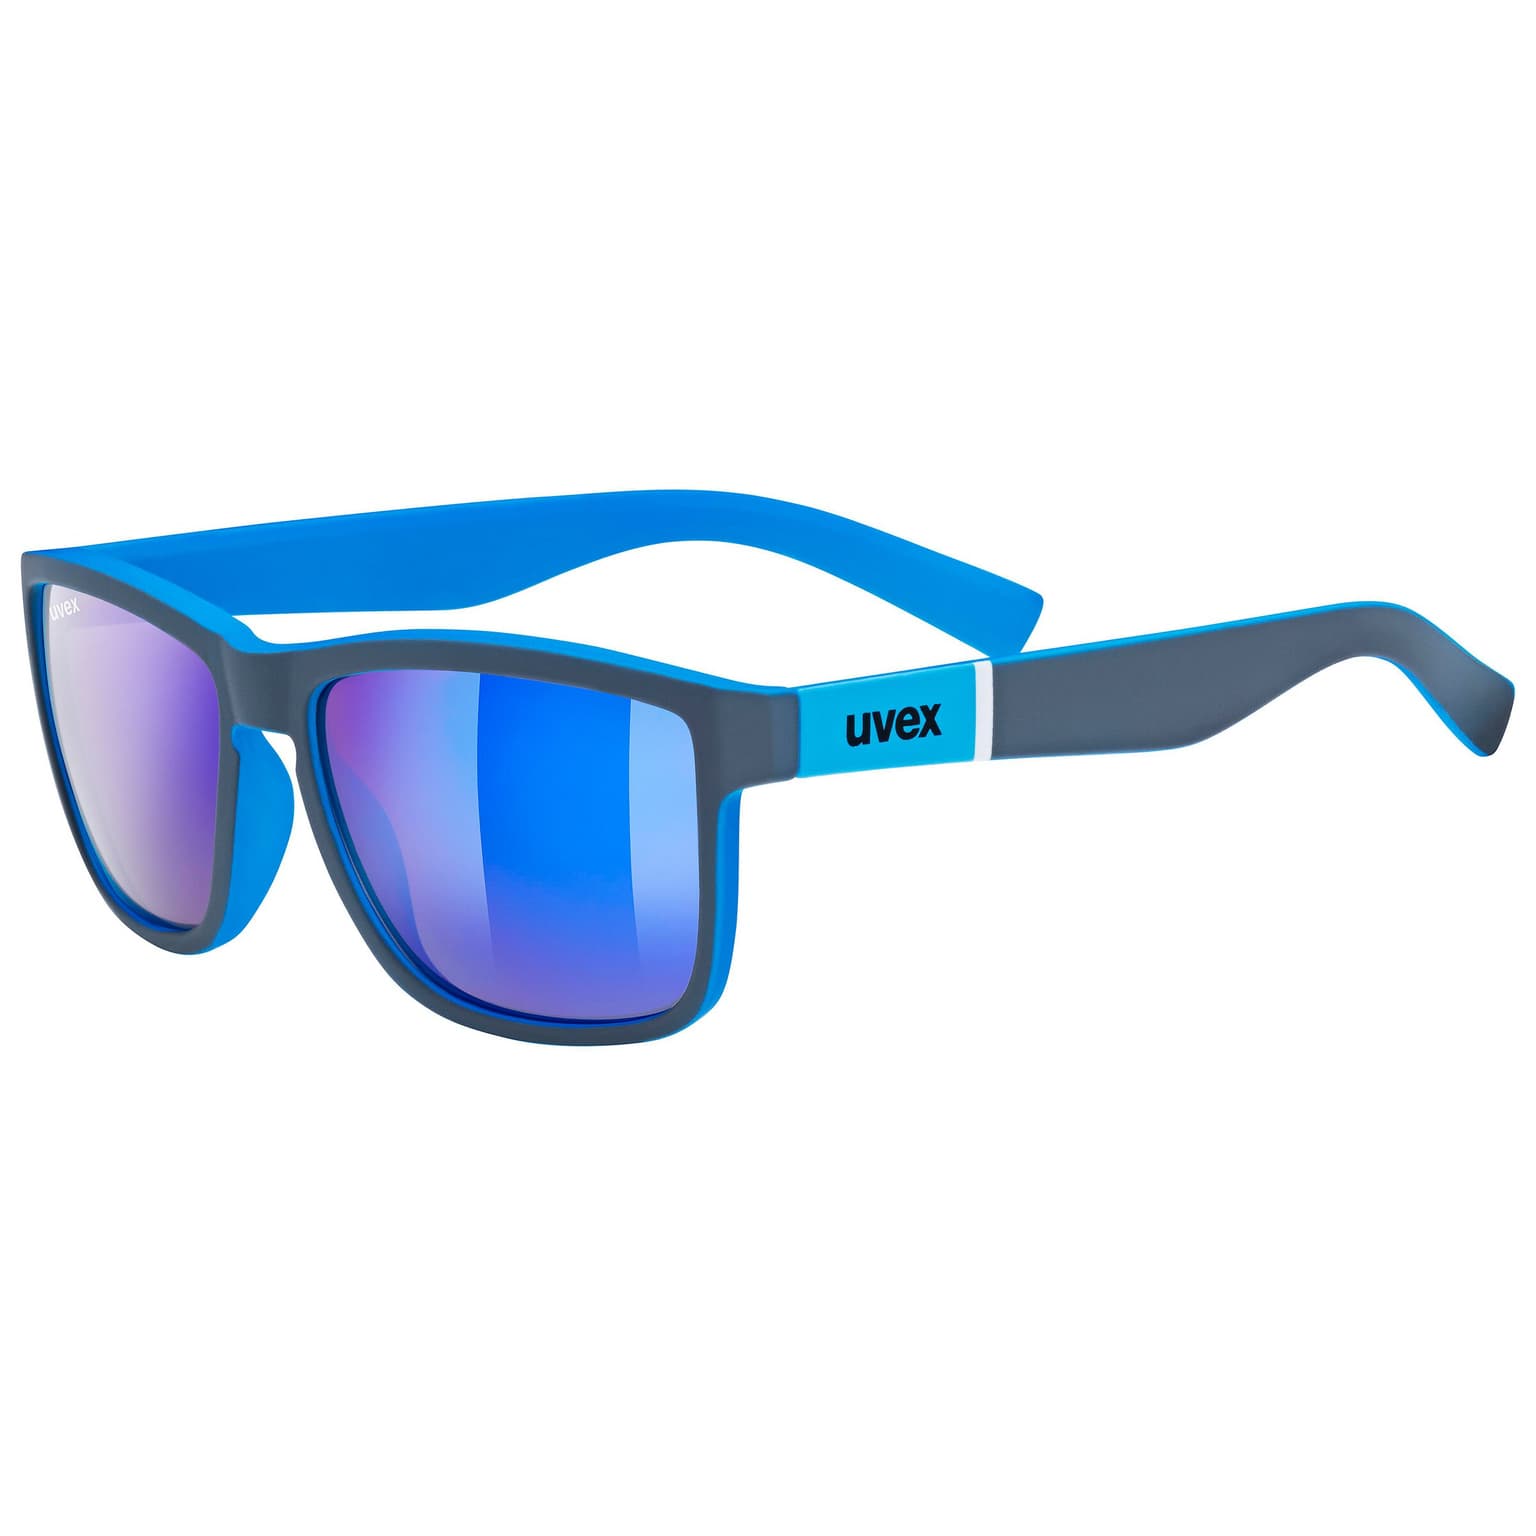 Uvex Uvex Lifestyle lgl 39 Sportbrille blau 1